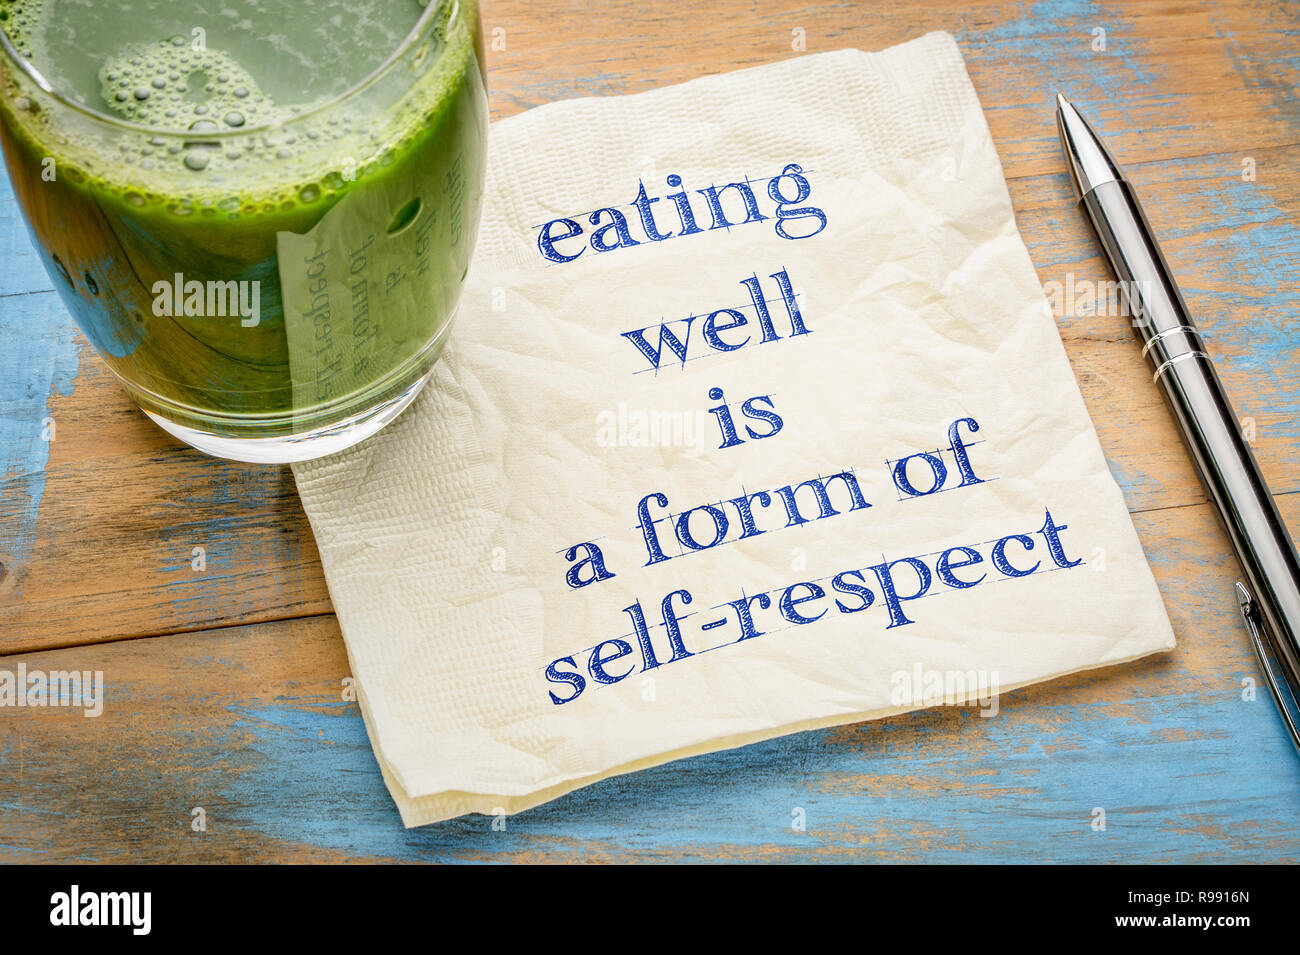 Gut essen ist eine Form der Selbstachtung - Handschrift auf eine Serviette mit einem Glas frisch, grün, Gemüsesaft Stockfoto